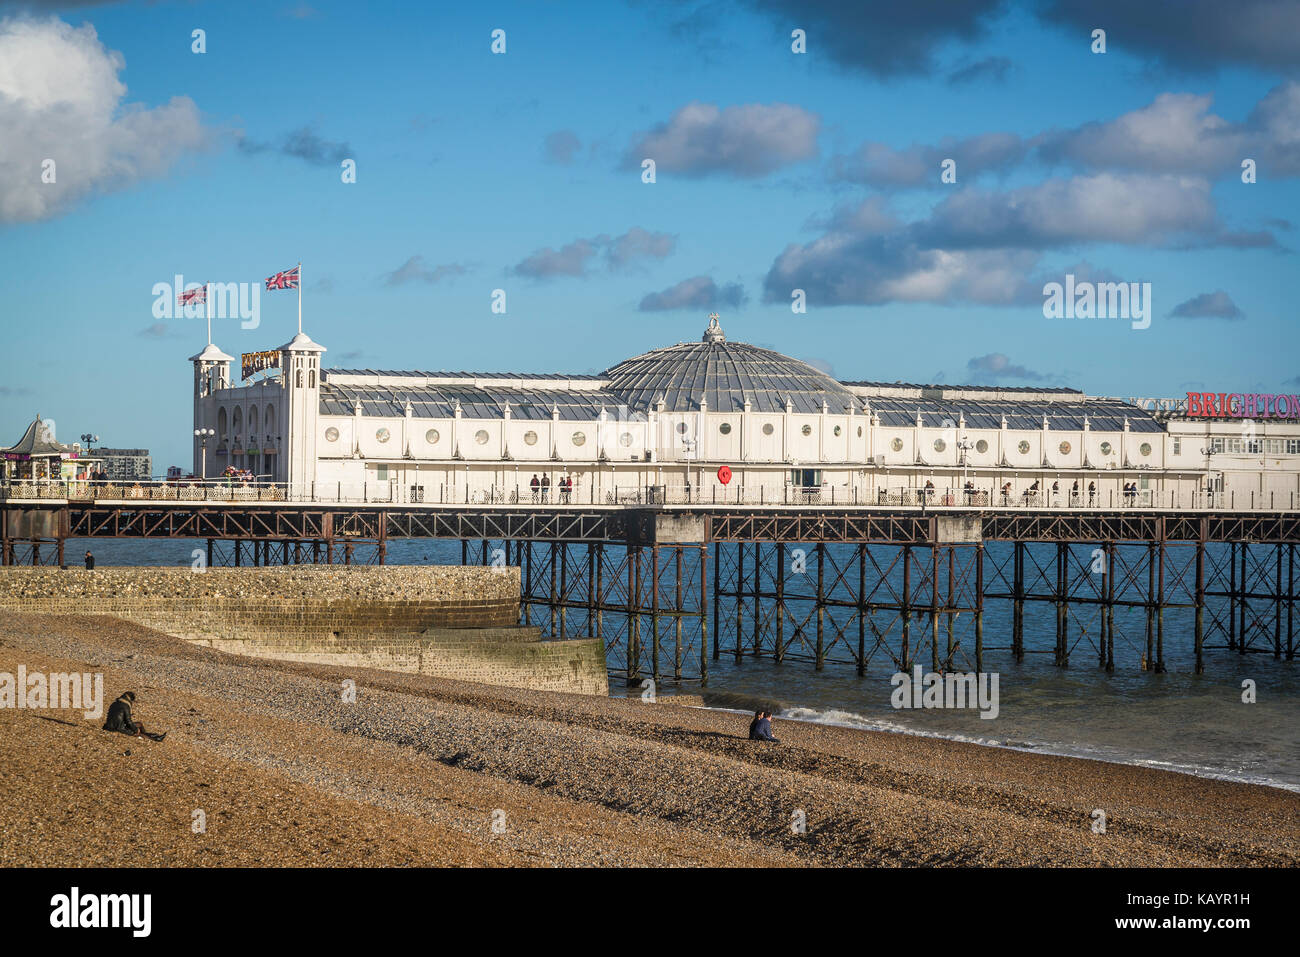 Brighton Palace Pier, Brighton, England, UK Stock Photo